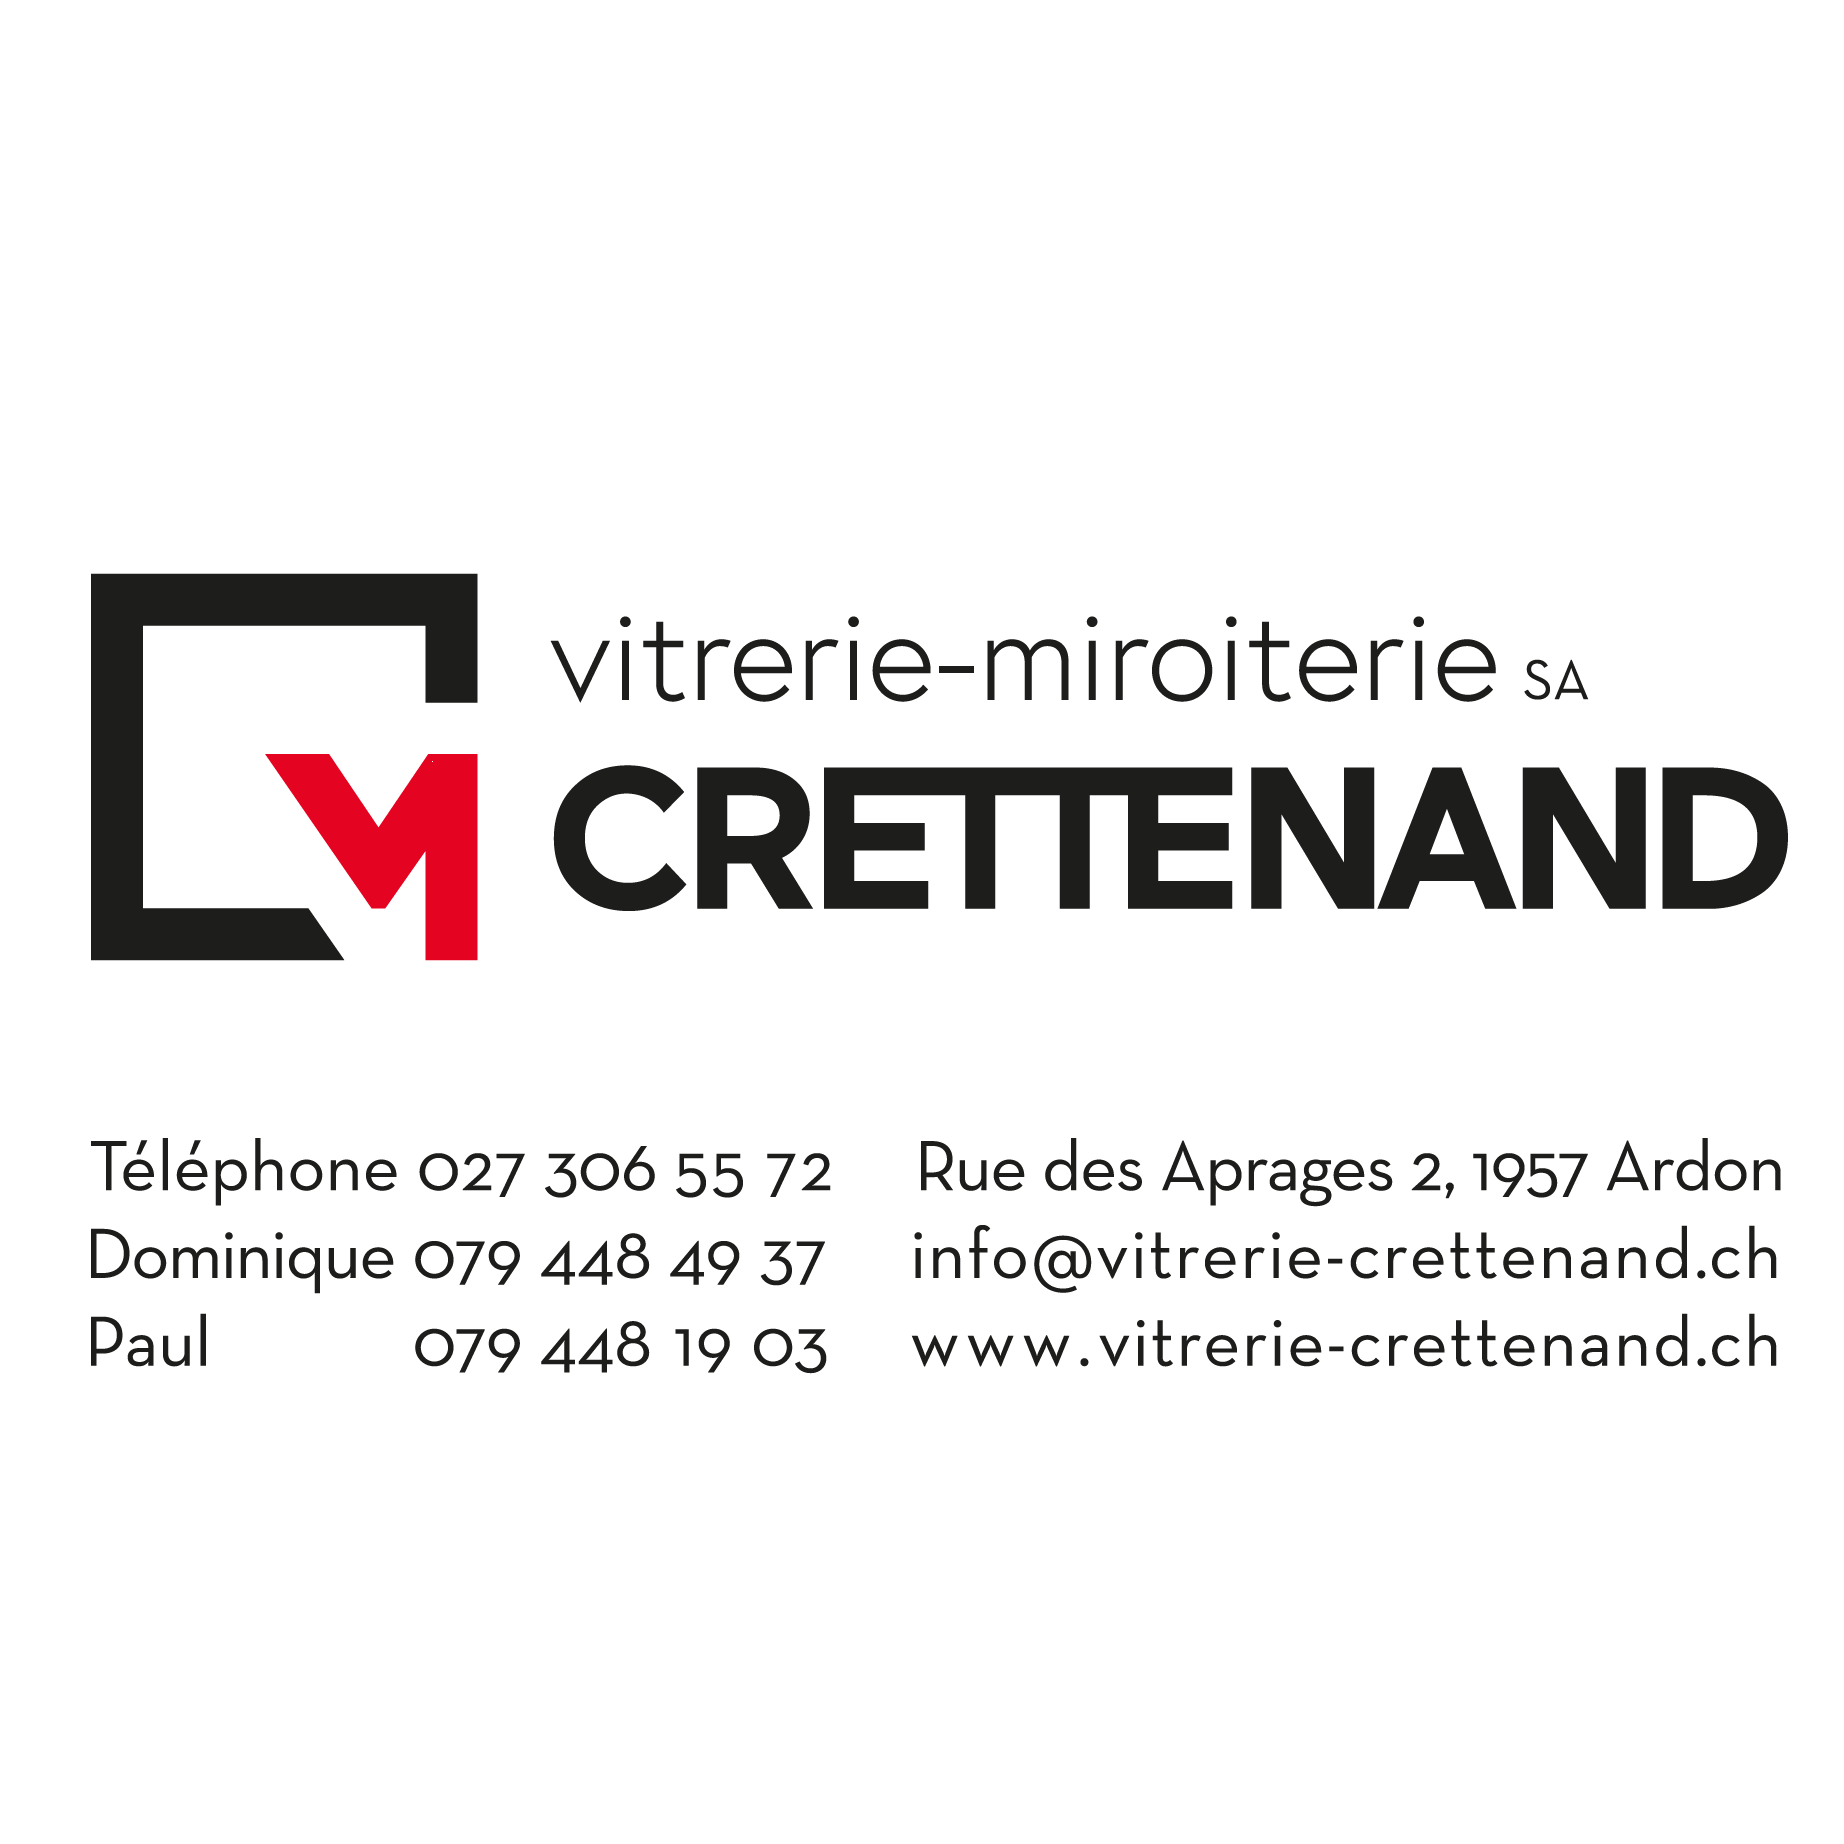 Vitrerie Crettenand SA Logo